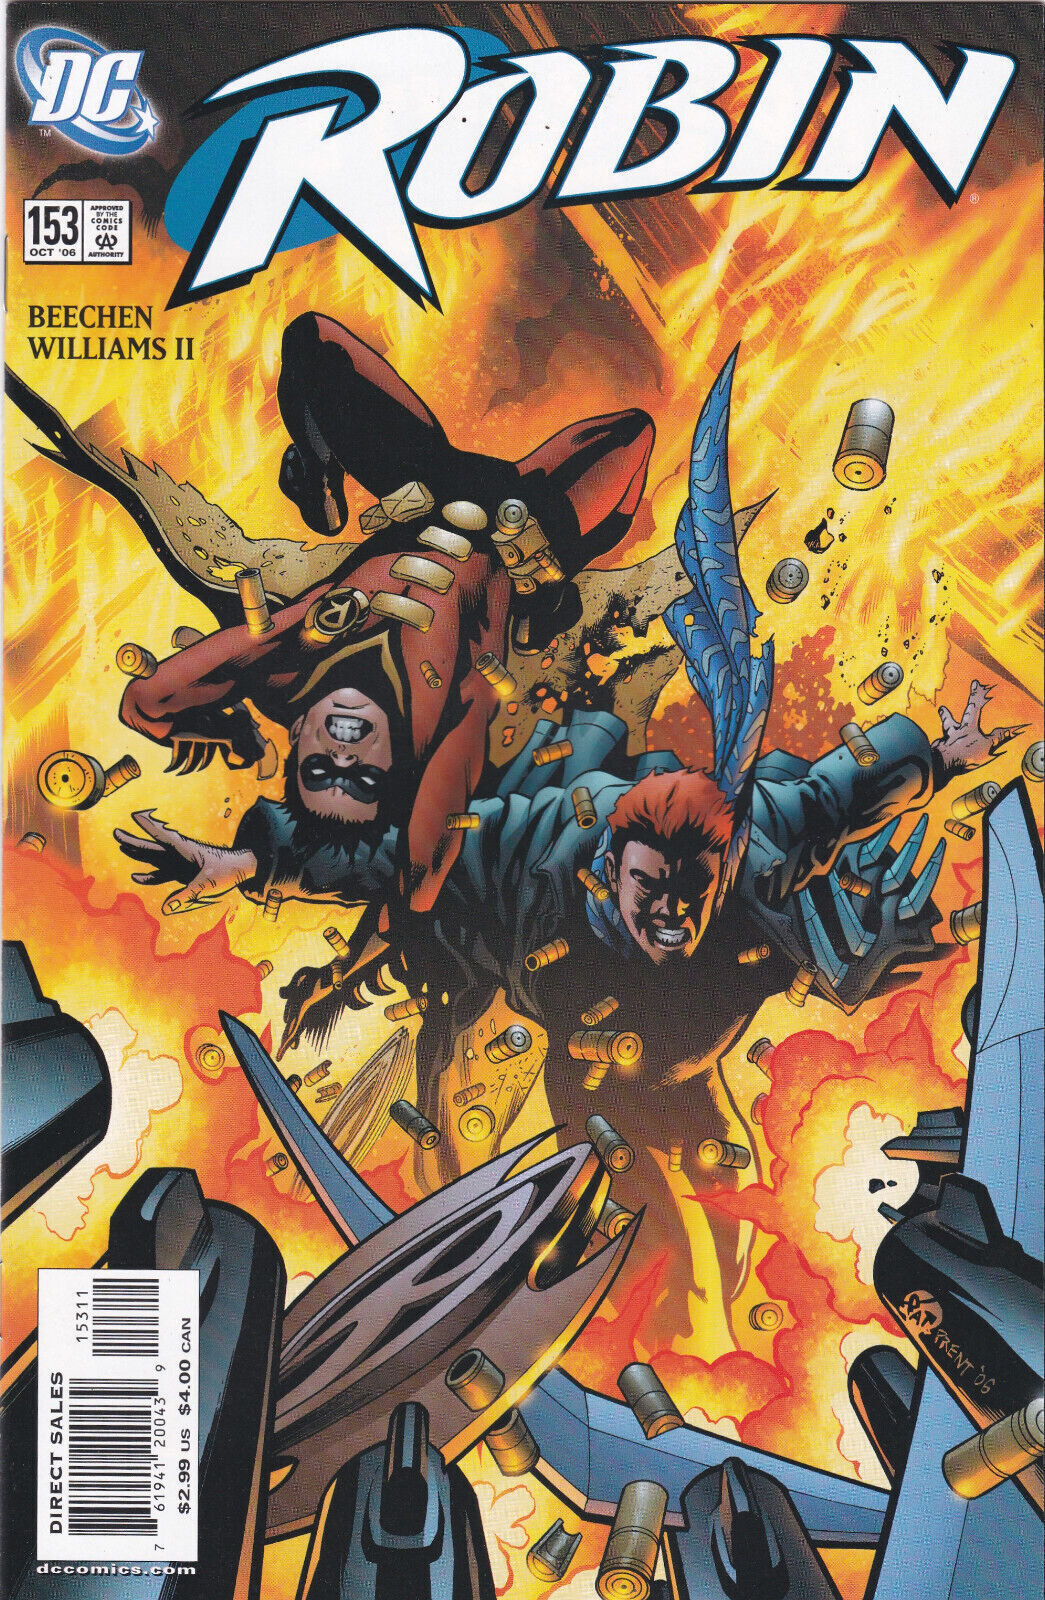 Robin #153, Vol. 2 (1993-2009) DC Comics, High Grade